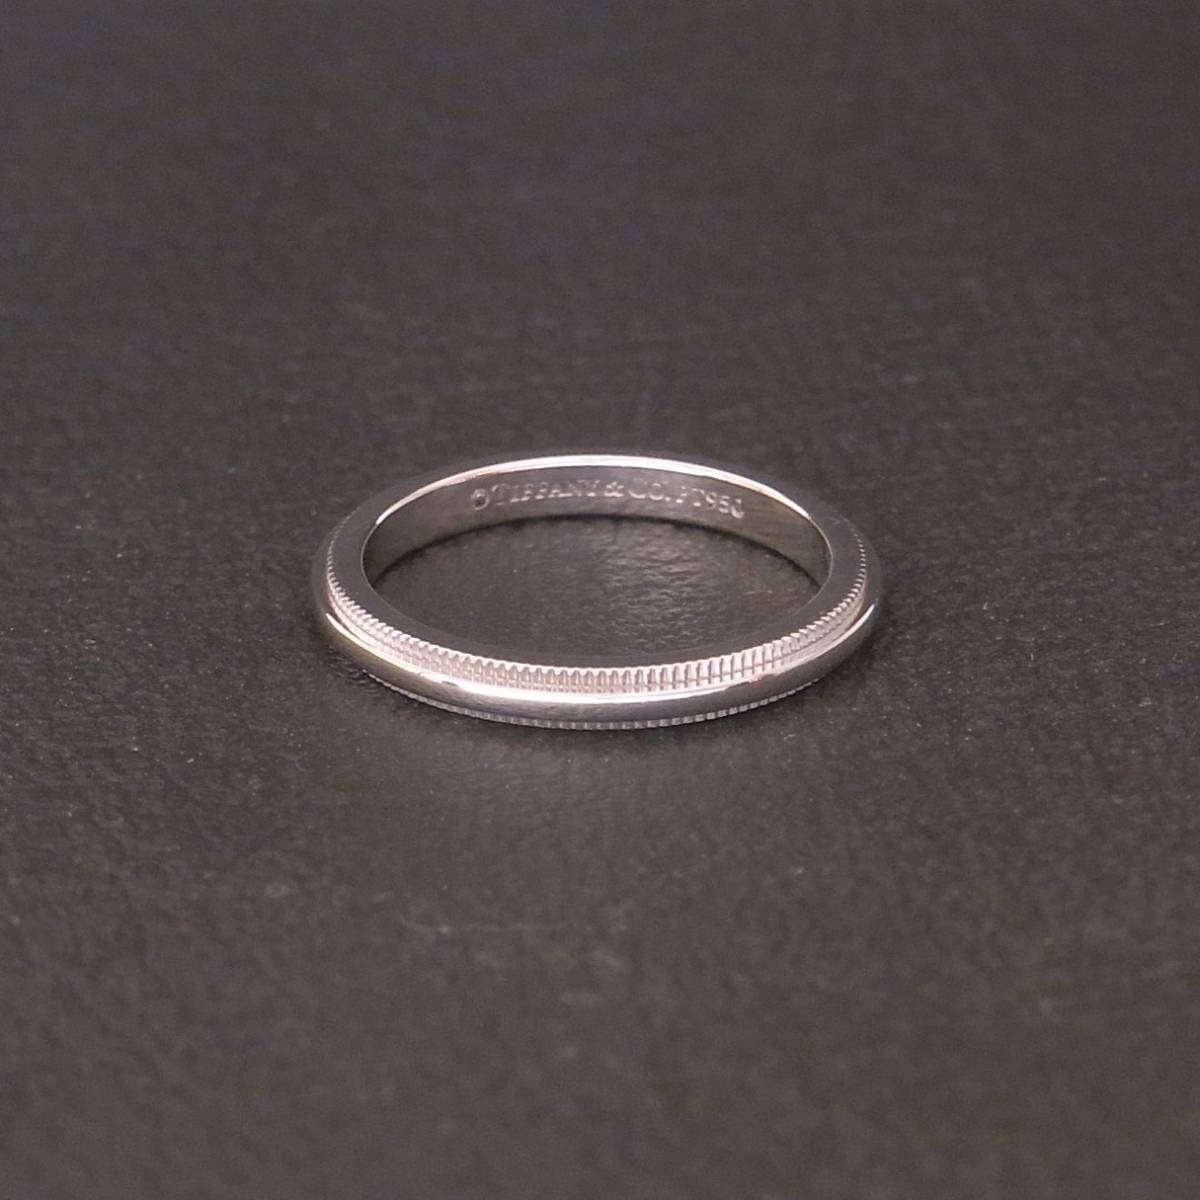 新品同様 美品 TIFFANY&Co. ティファニー pt950 プラチナ クラシックミルグレンリング 2ｍｍ 8号 3.4g 結婚指輪 マリッジリング